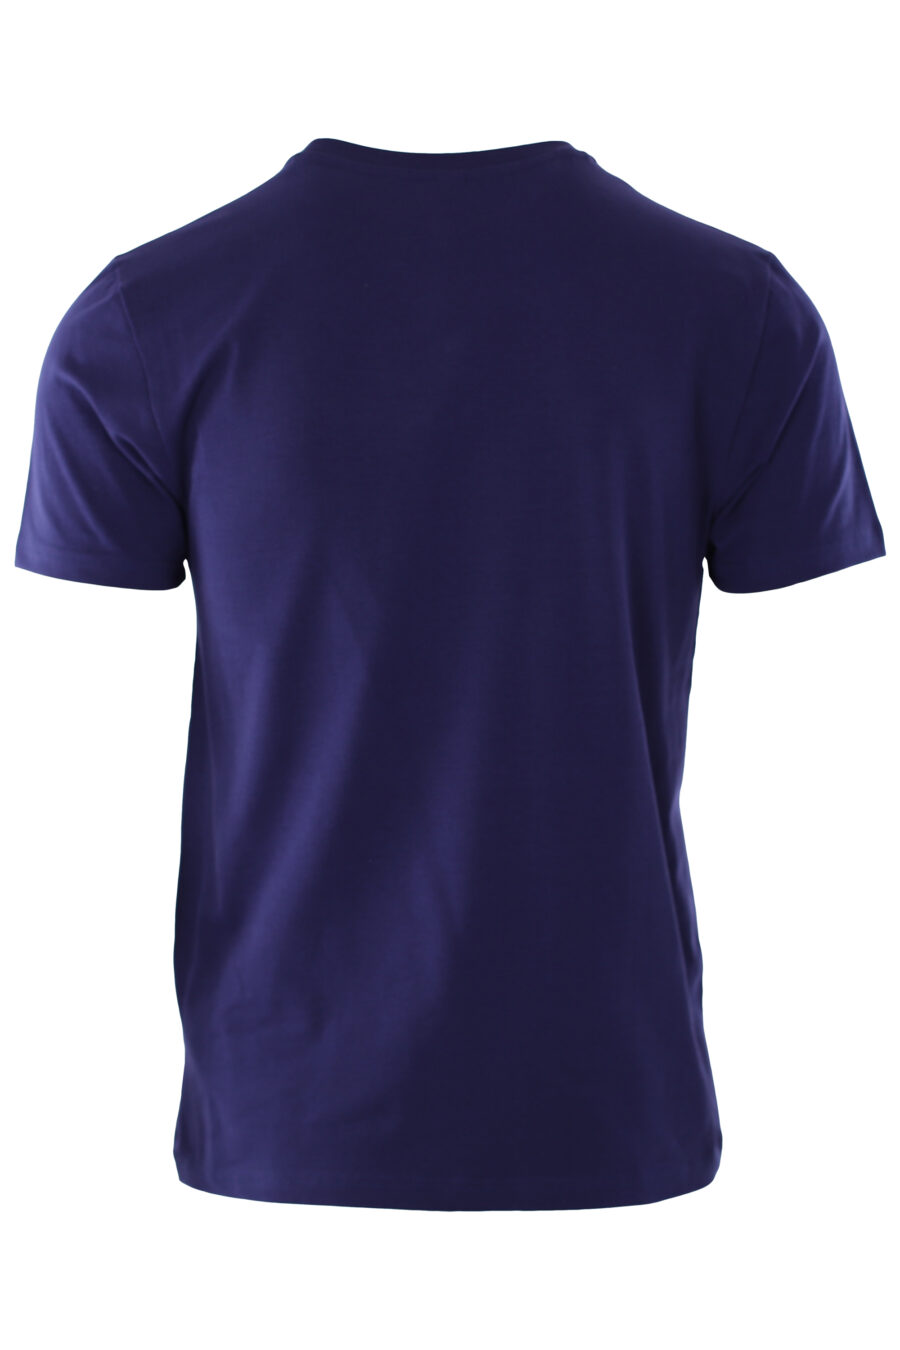 T-shirt azul com o logótipo do urso "underbear" - IMG 6594